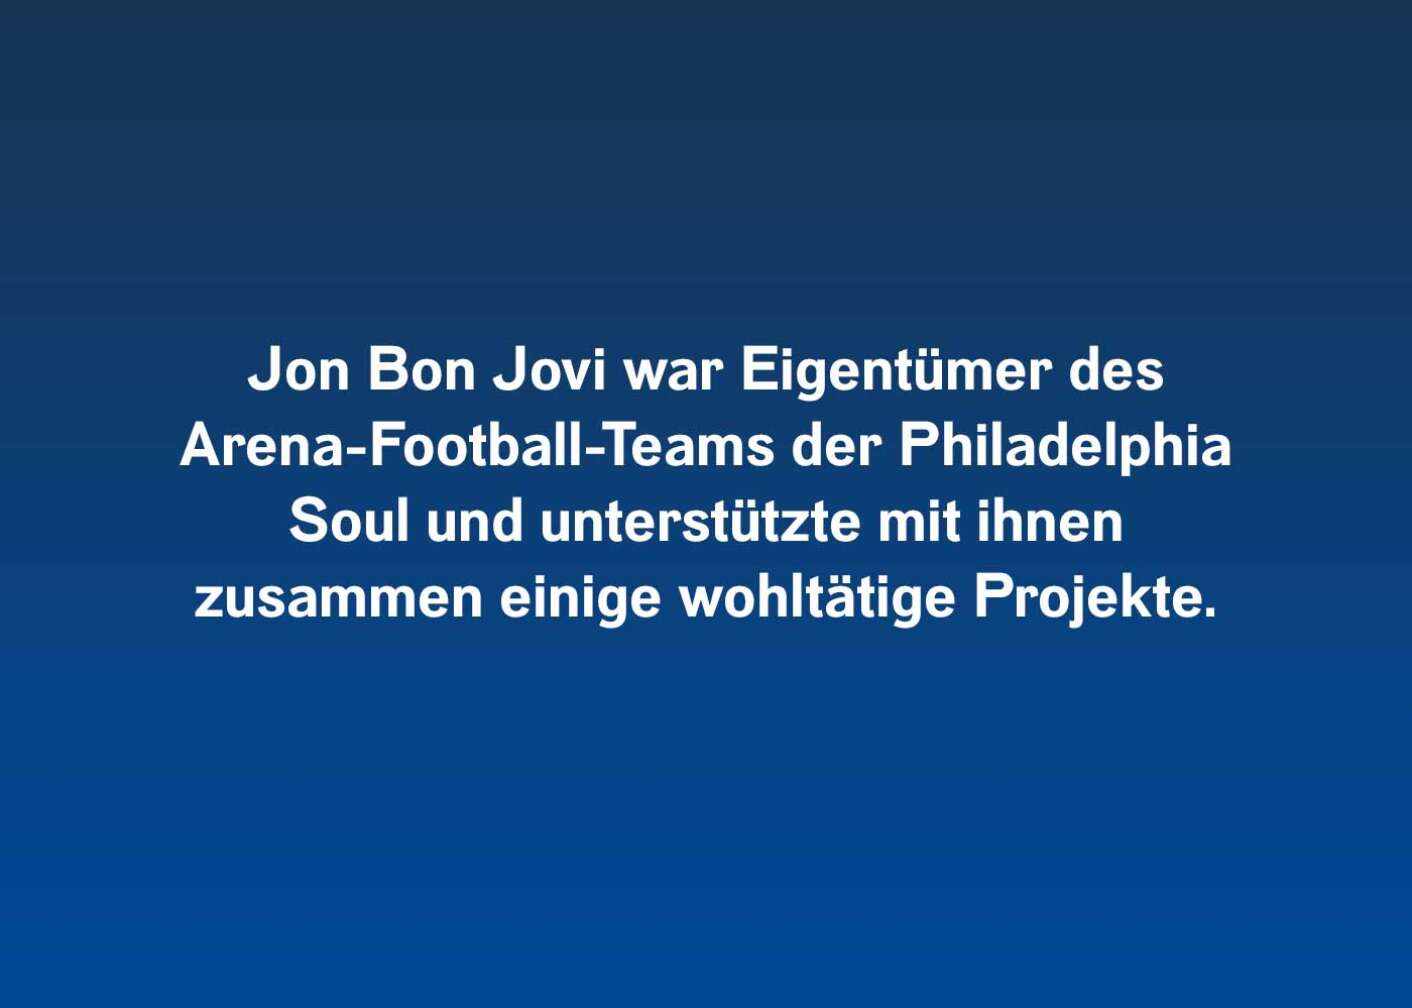 Fakten über Jon Bon Jovi